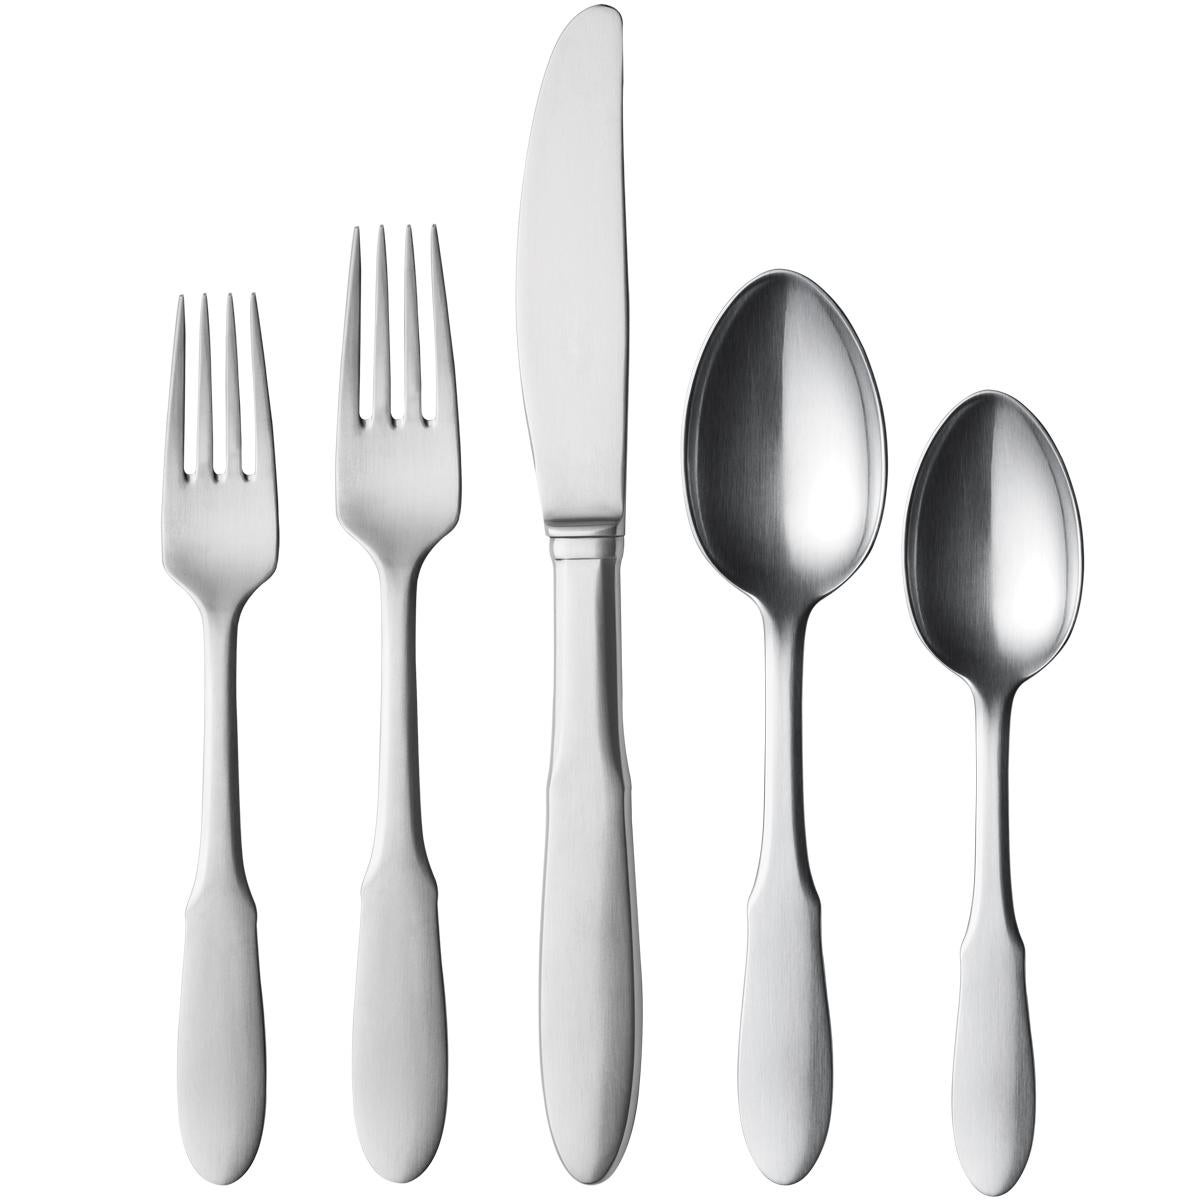 Ensemble de couverts en acier inoxydable comprenant une fourchette de table, une cuillère de table, un long couteau de table, une fourchette d'entrée et une cuillère à thé.